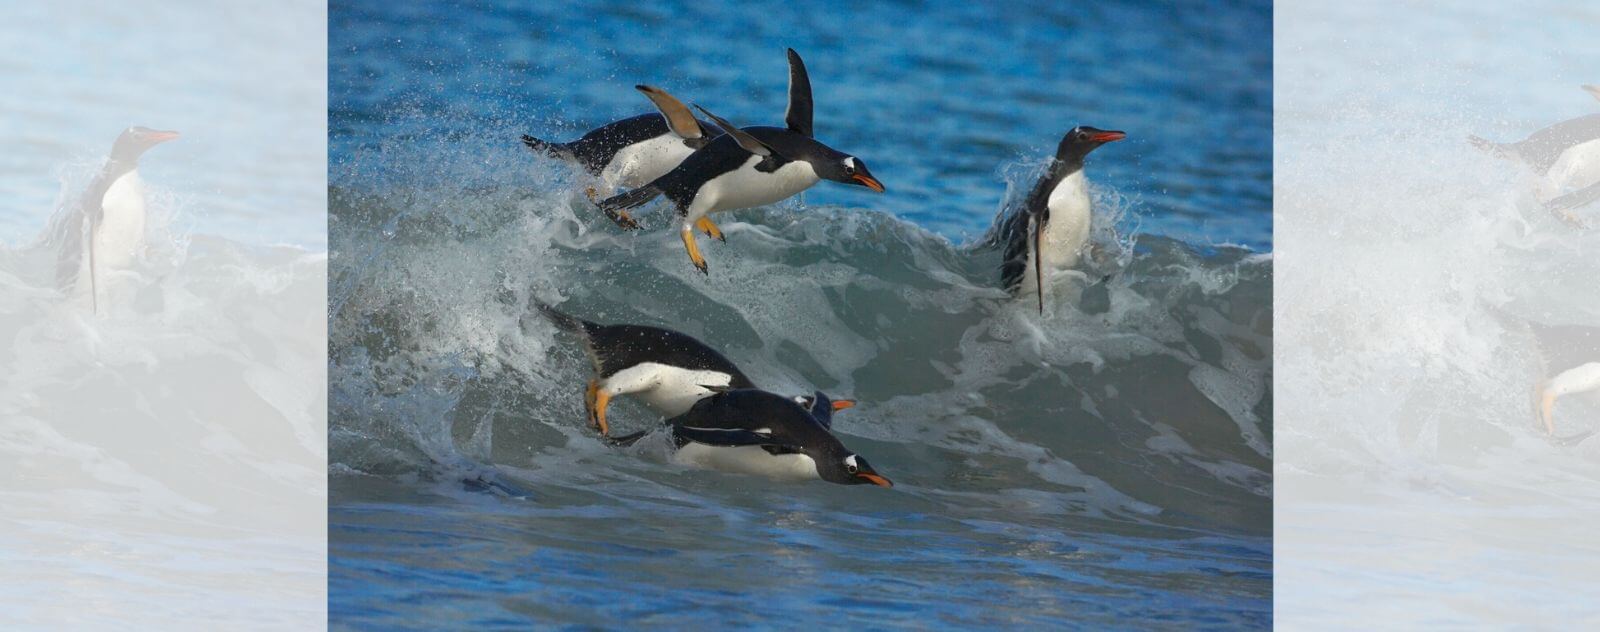 Pingüino nadando en una ola